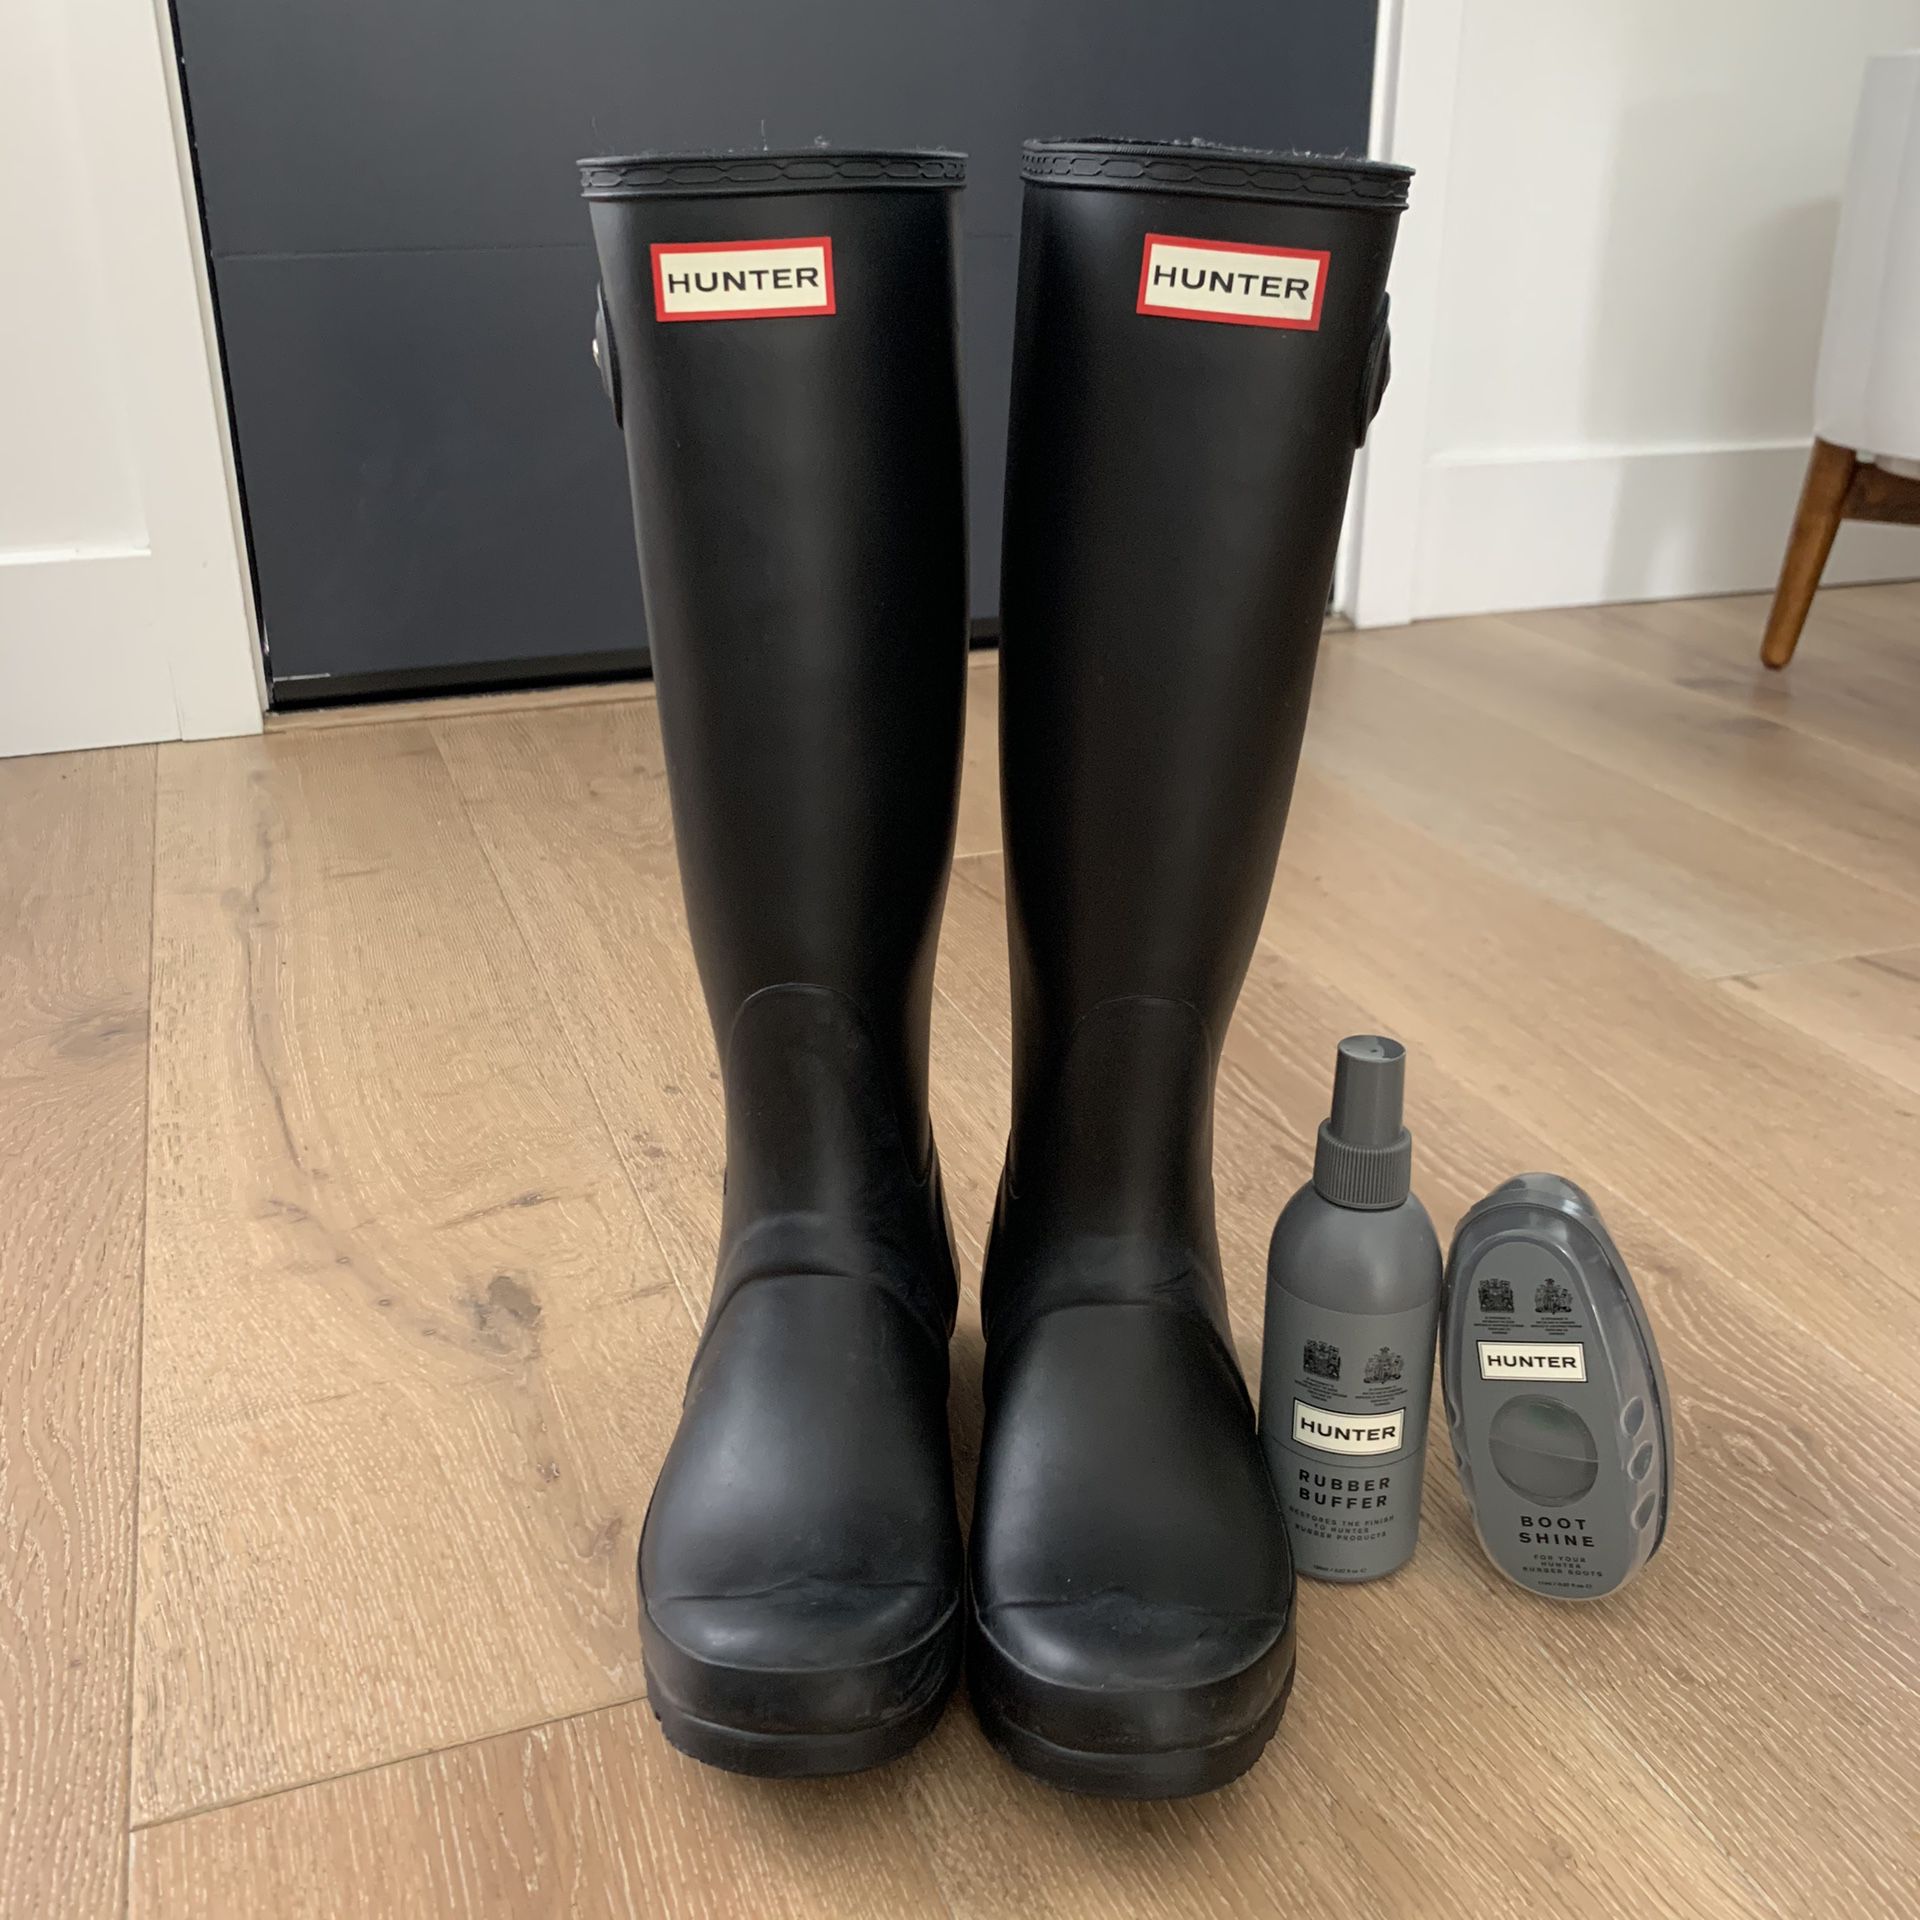 Hunter rain boots - black, tall, size 7